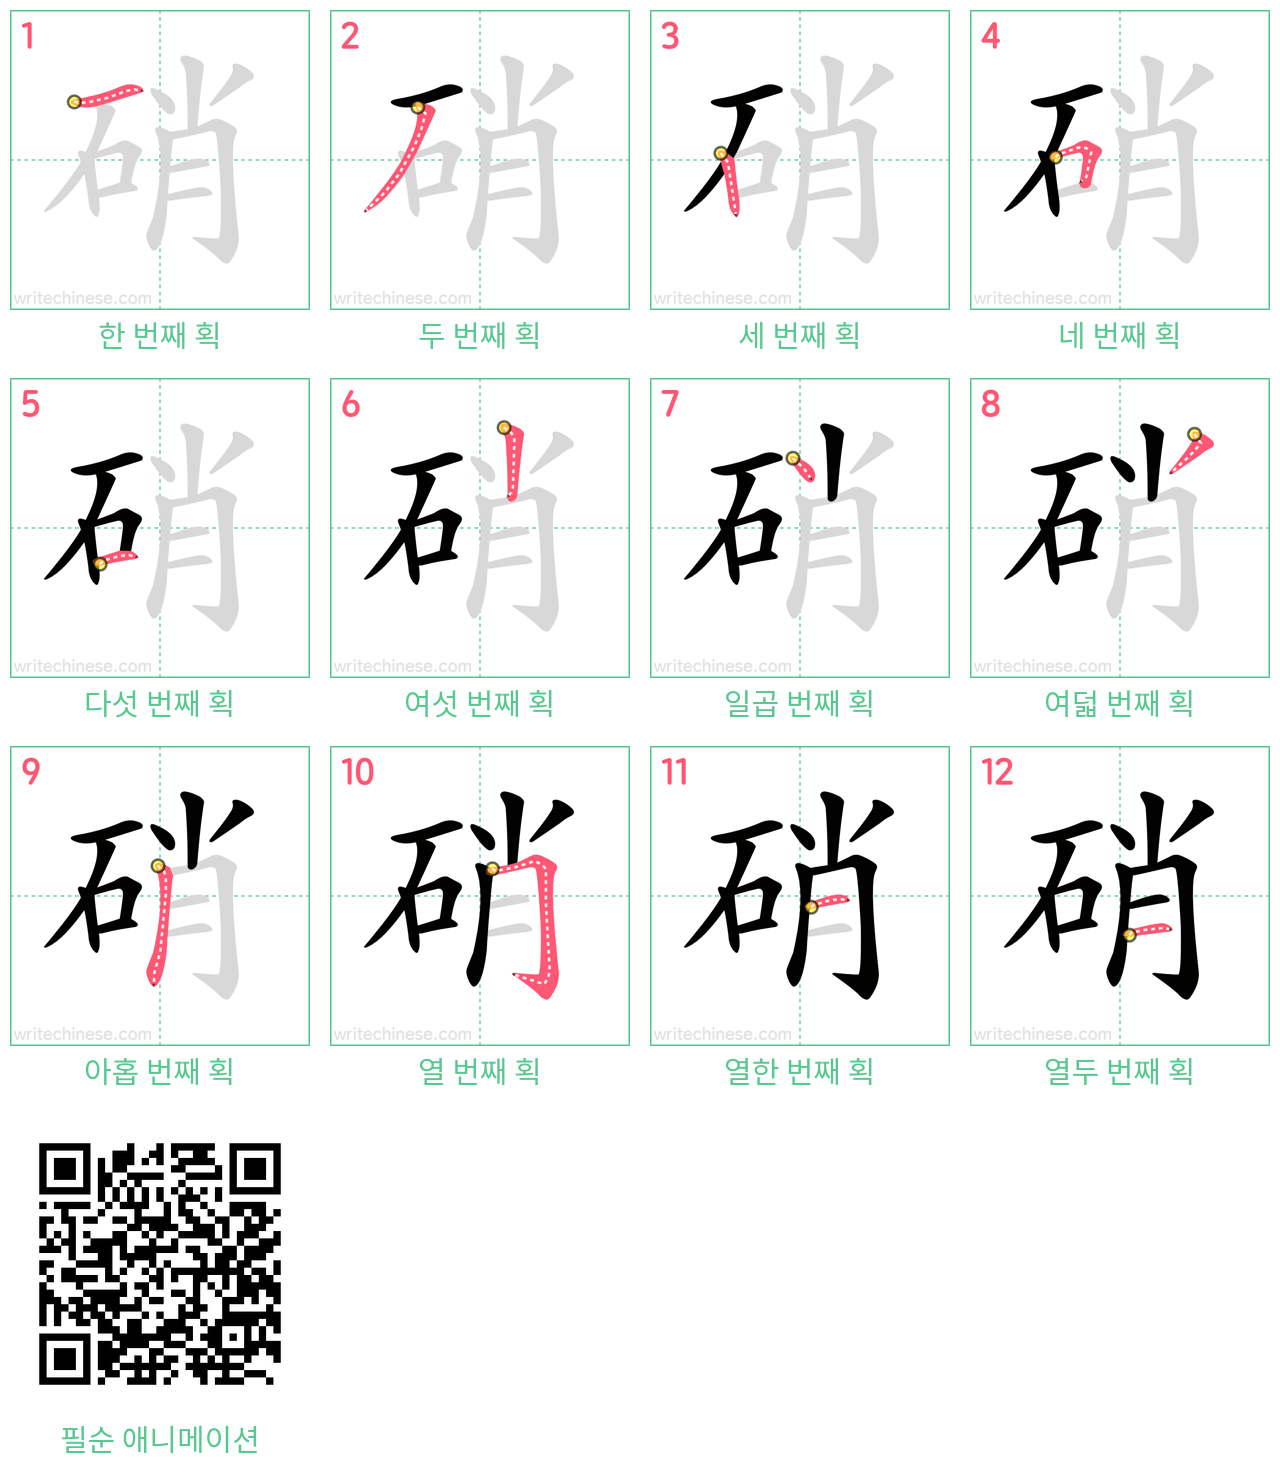 硝 step-by-step stroke order diagrams